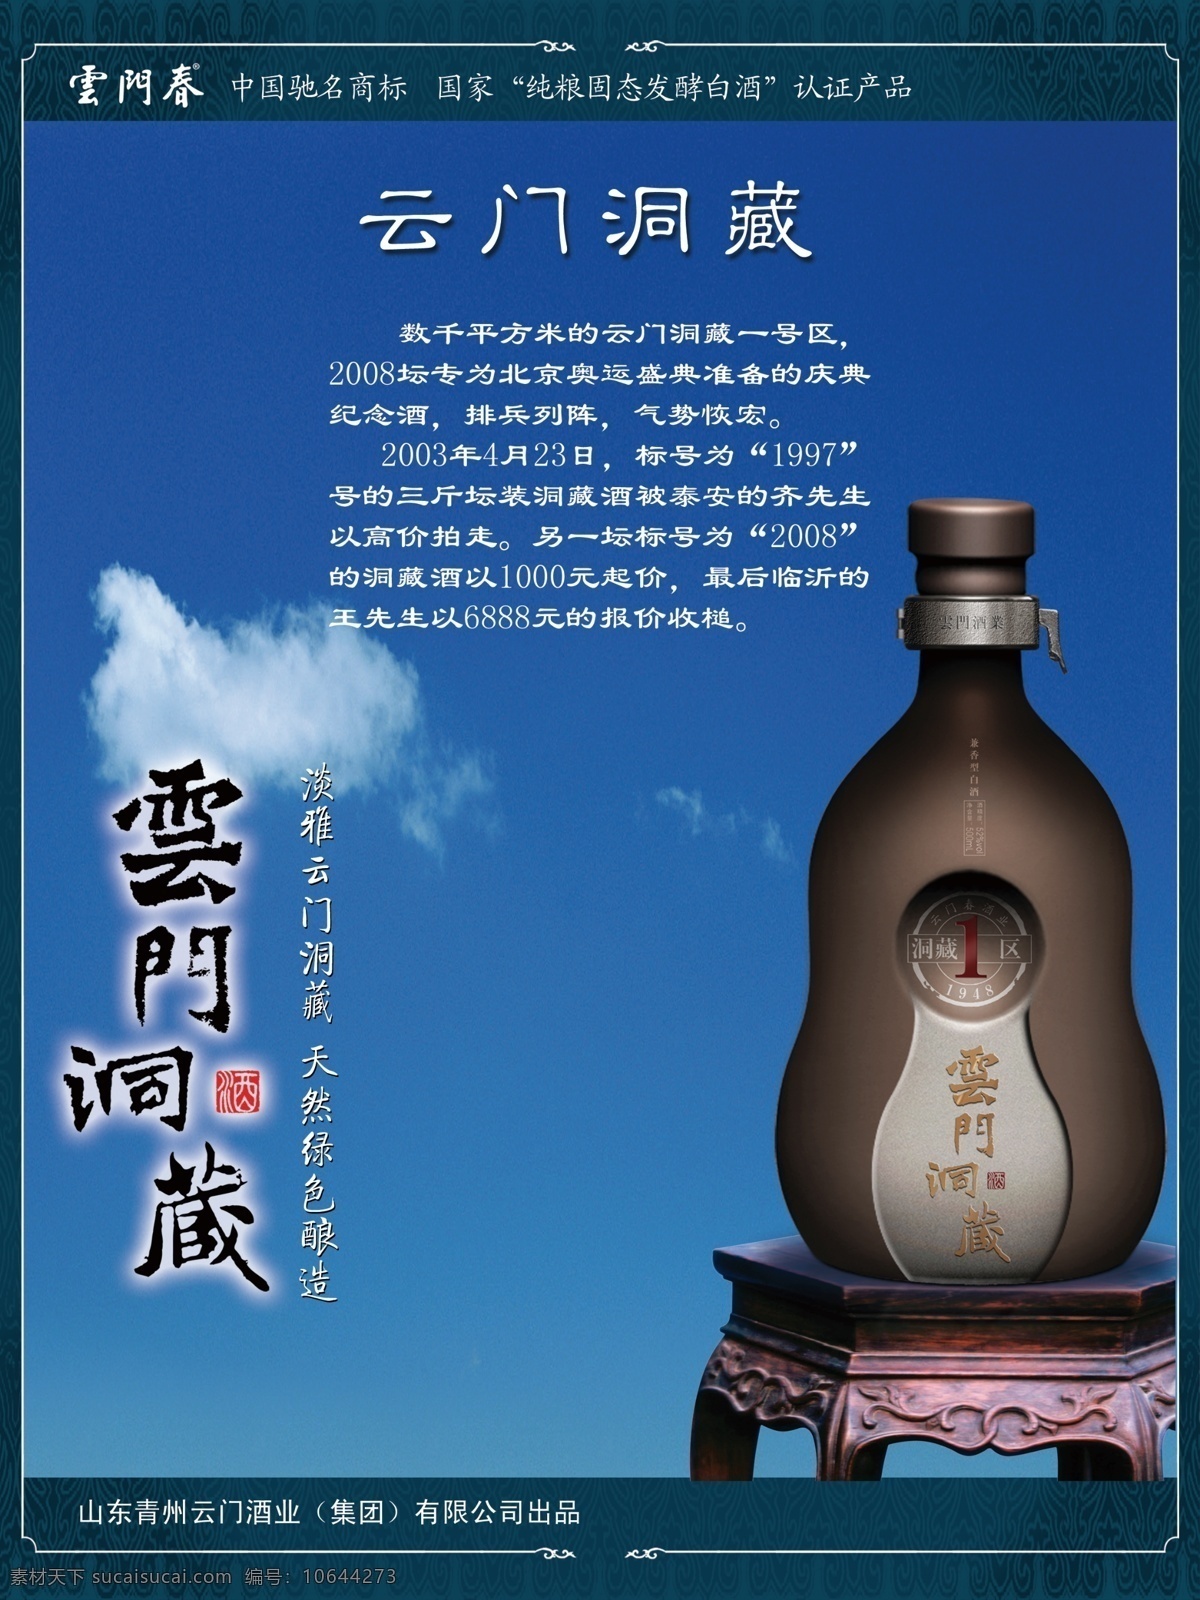 云门 春 洞 藏 海报 青州 云门酒业 酒瓶 白酒 潍坊 广告设计模板 源文件